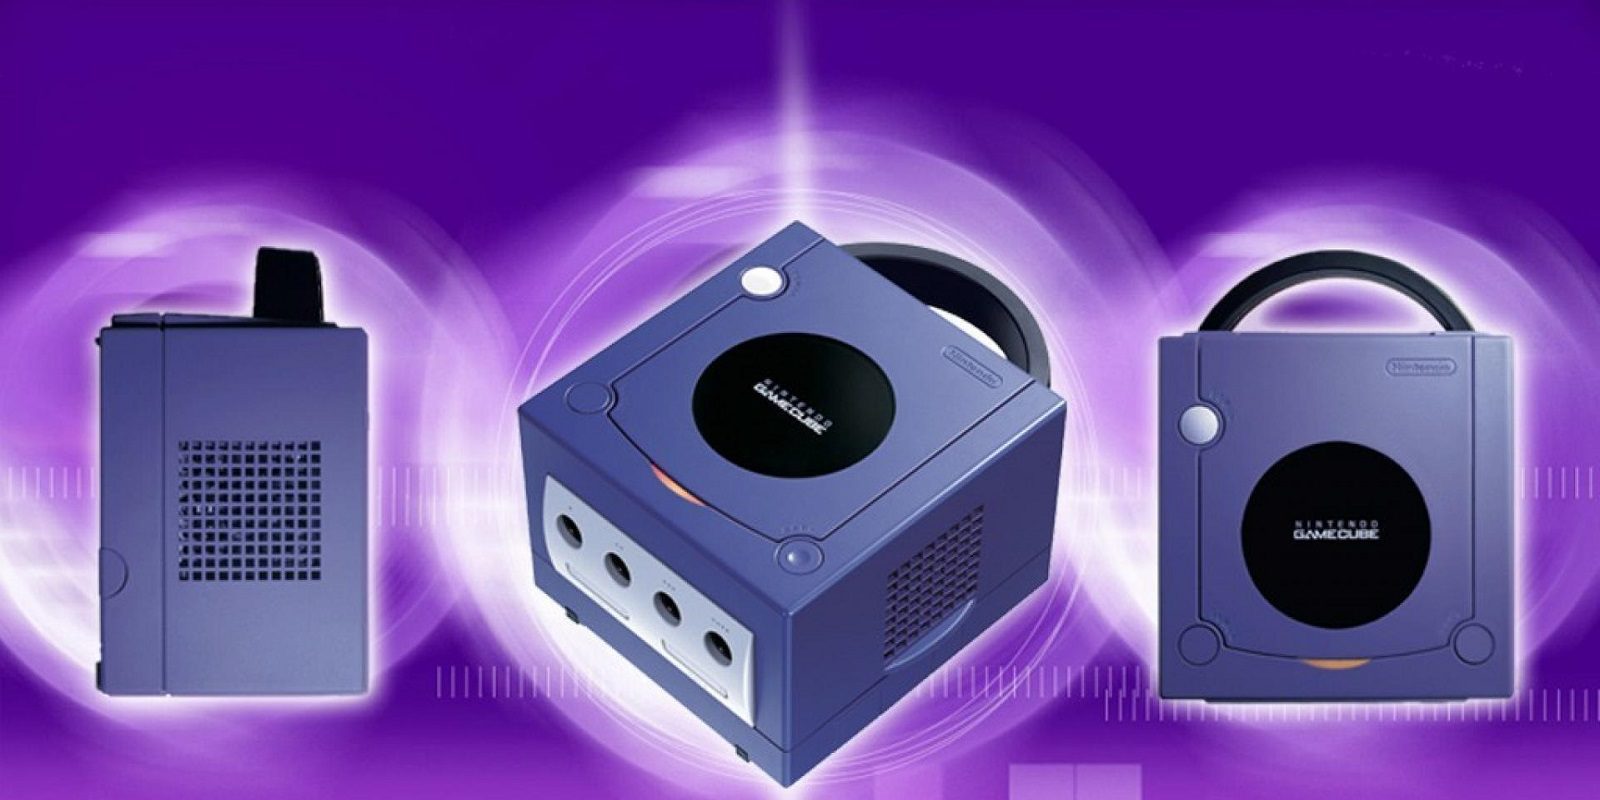 Hoy celebramos el 15 aniversario de Nintendo GameCube